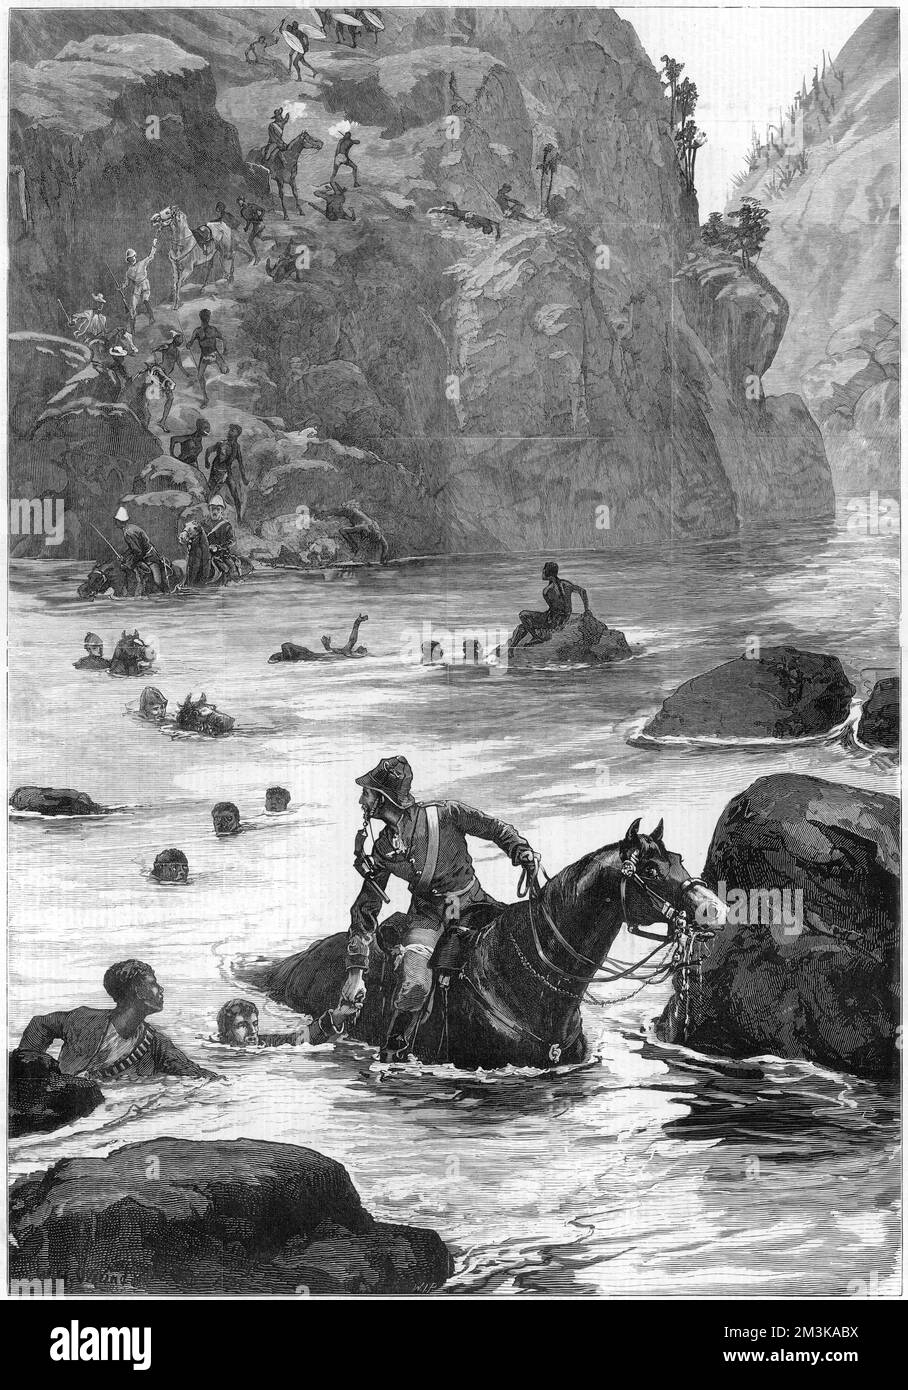 La guerre de Zulu : retrait des forces britanniques de leur défaite à Isandlwana, en face de la rivière Buffalo ; les soldats croissent avec des chevaux, d'autres hommes nagent. Date: 1879 Banque D'Images